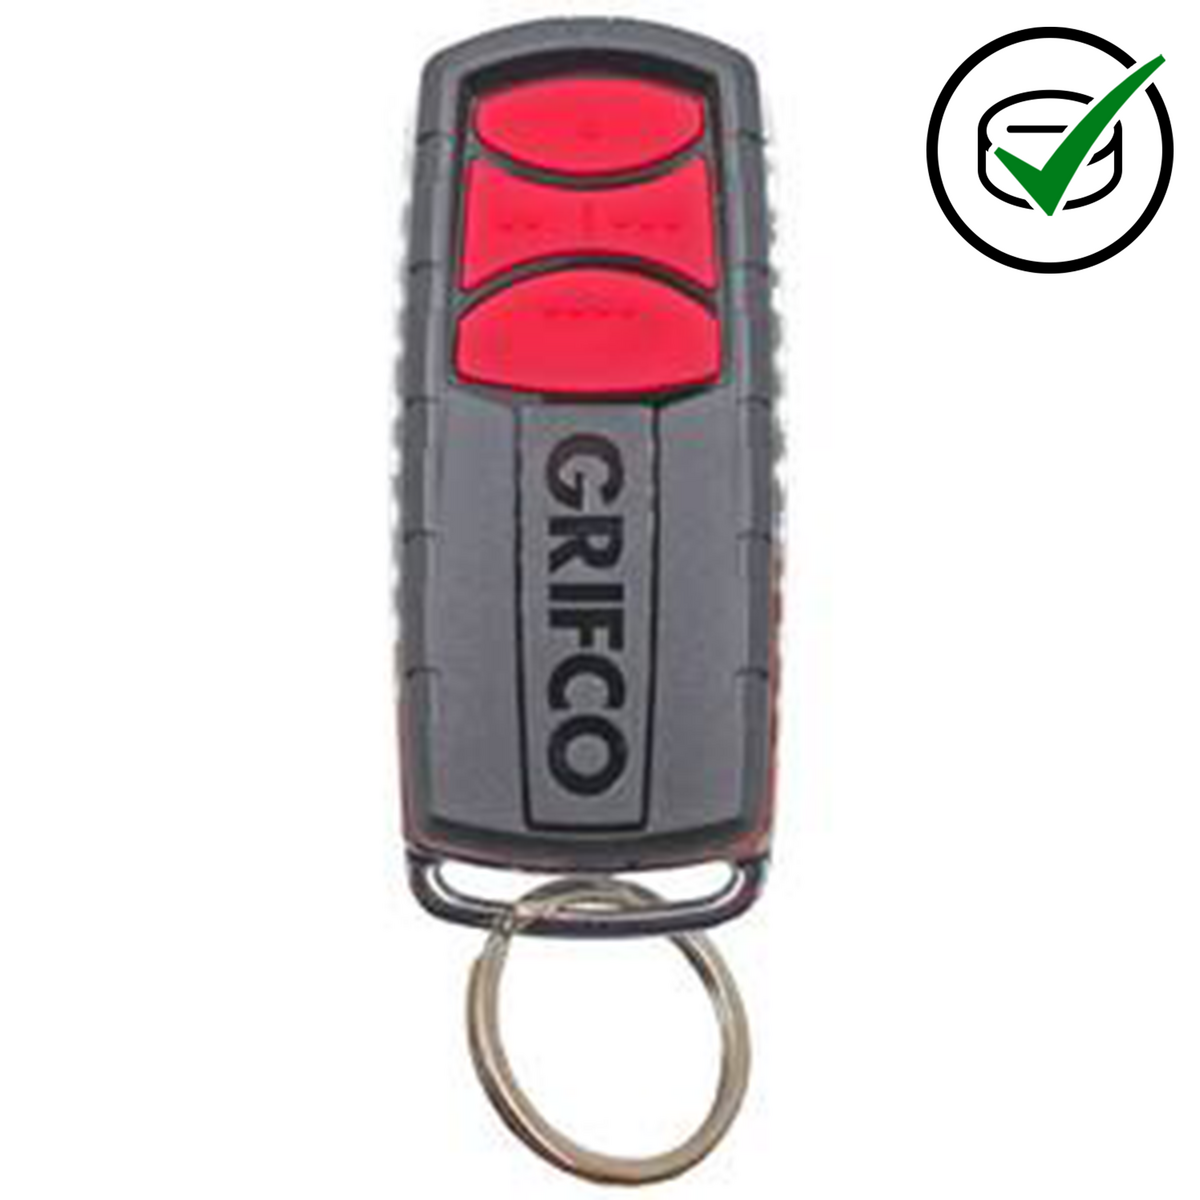 Grifco+ 2.0 E960G Genuine Remote